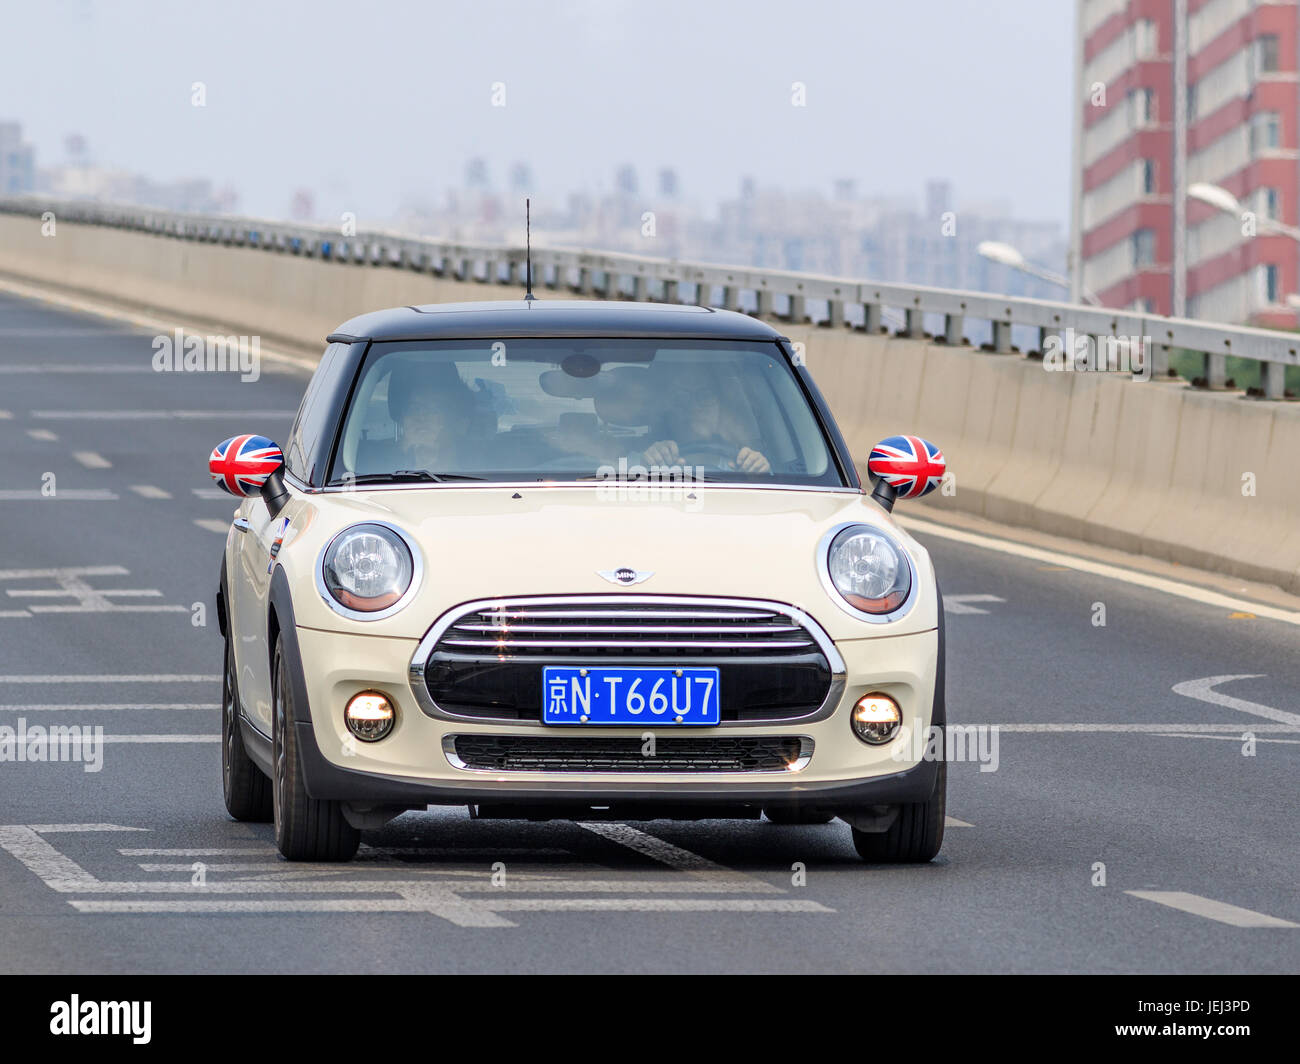 PECHINO-5 GIUGNO 2016. Mini Cooper sulla strada. BMW e Mini sono marchi di auto popolari in Cina e quindi importante per le vendite BMW. Foto Stock